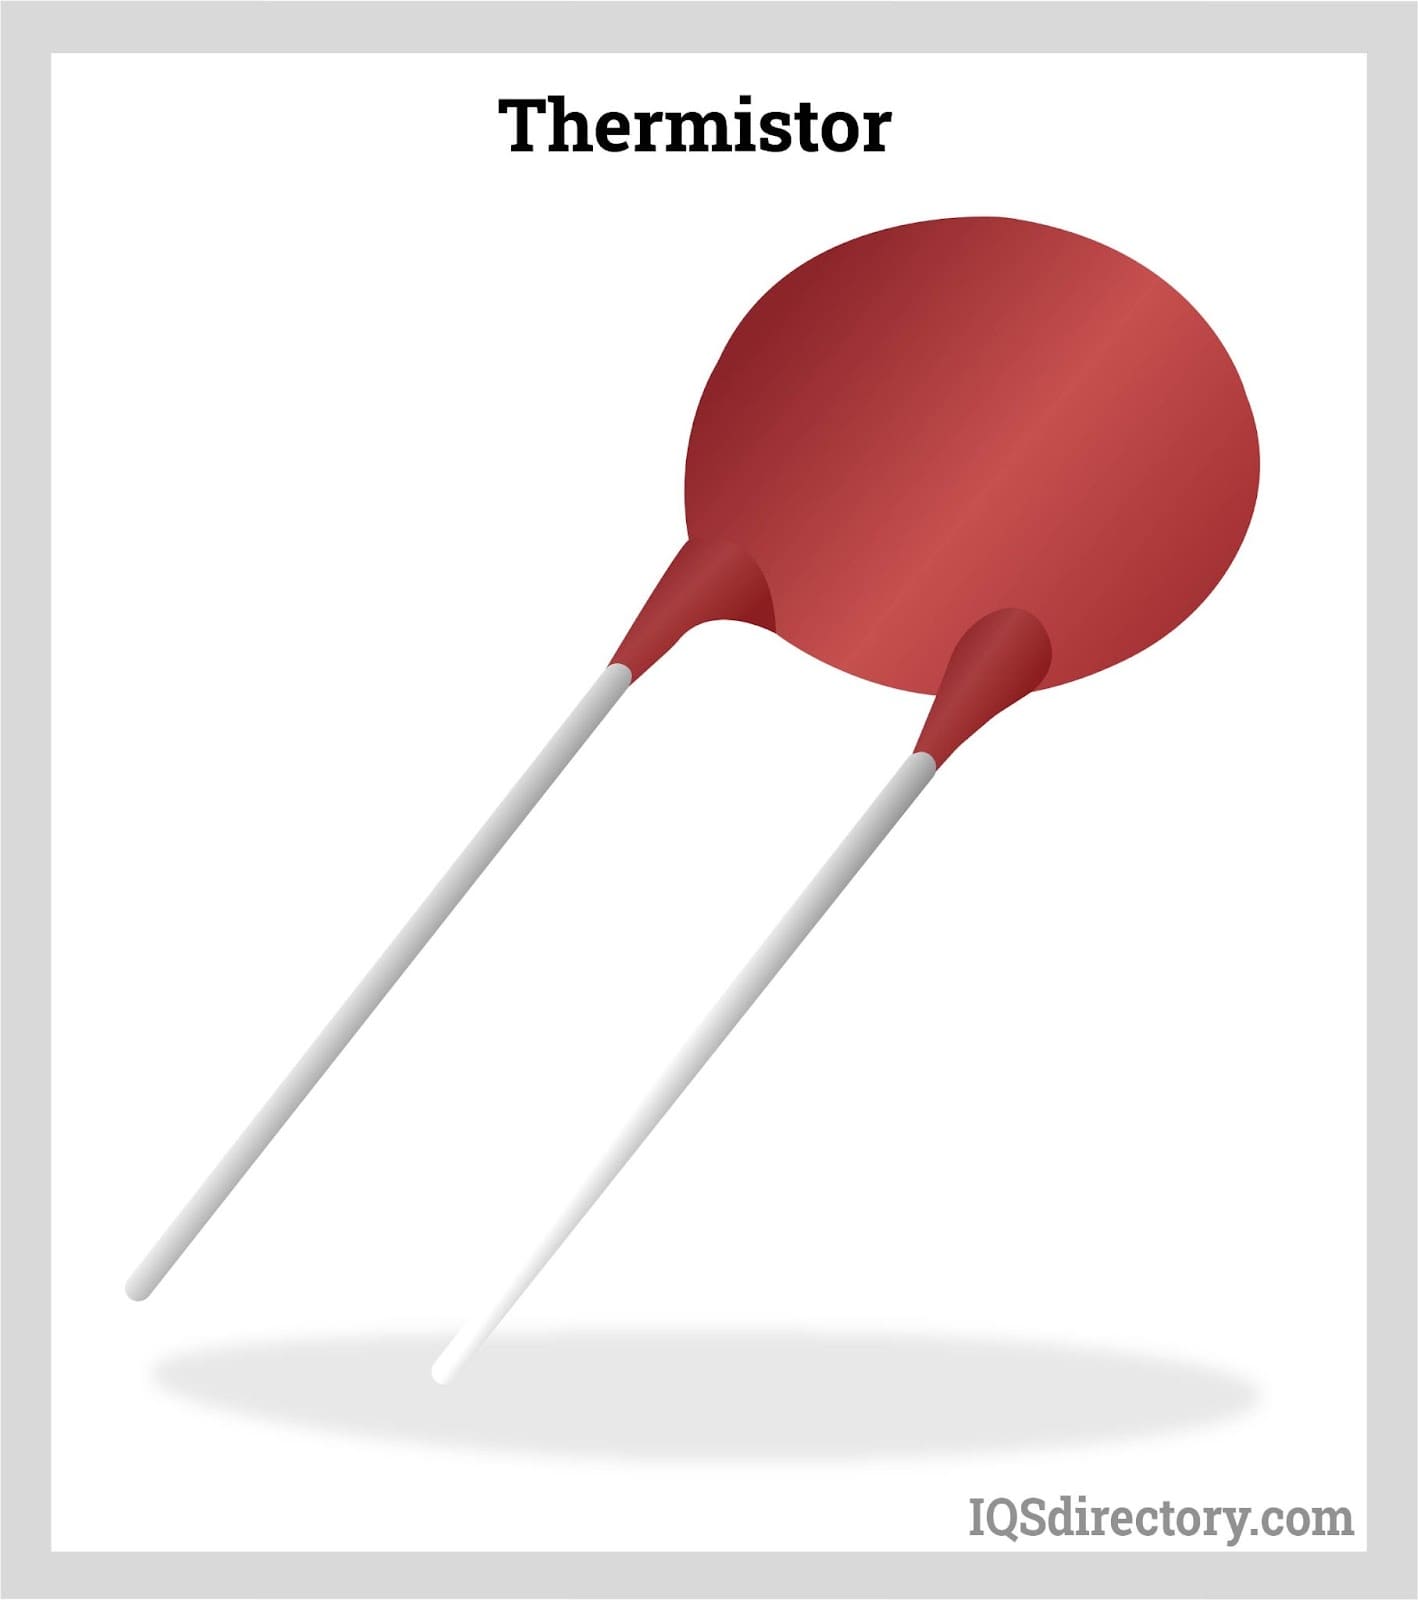 Thermistor